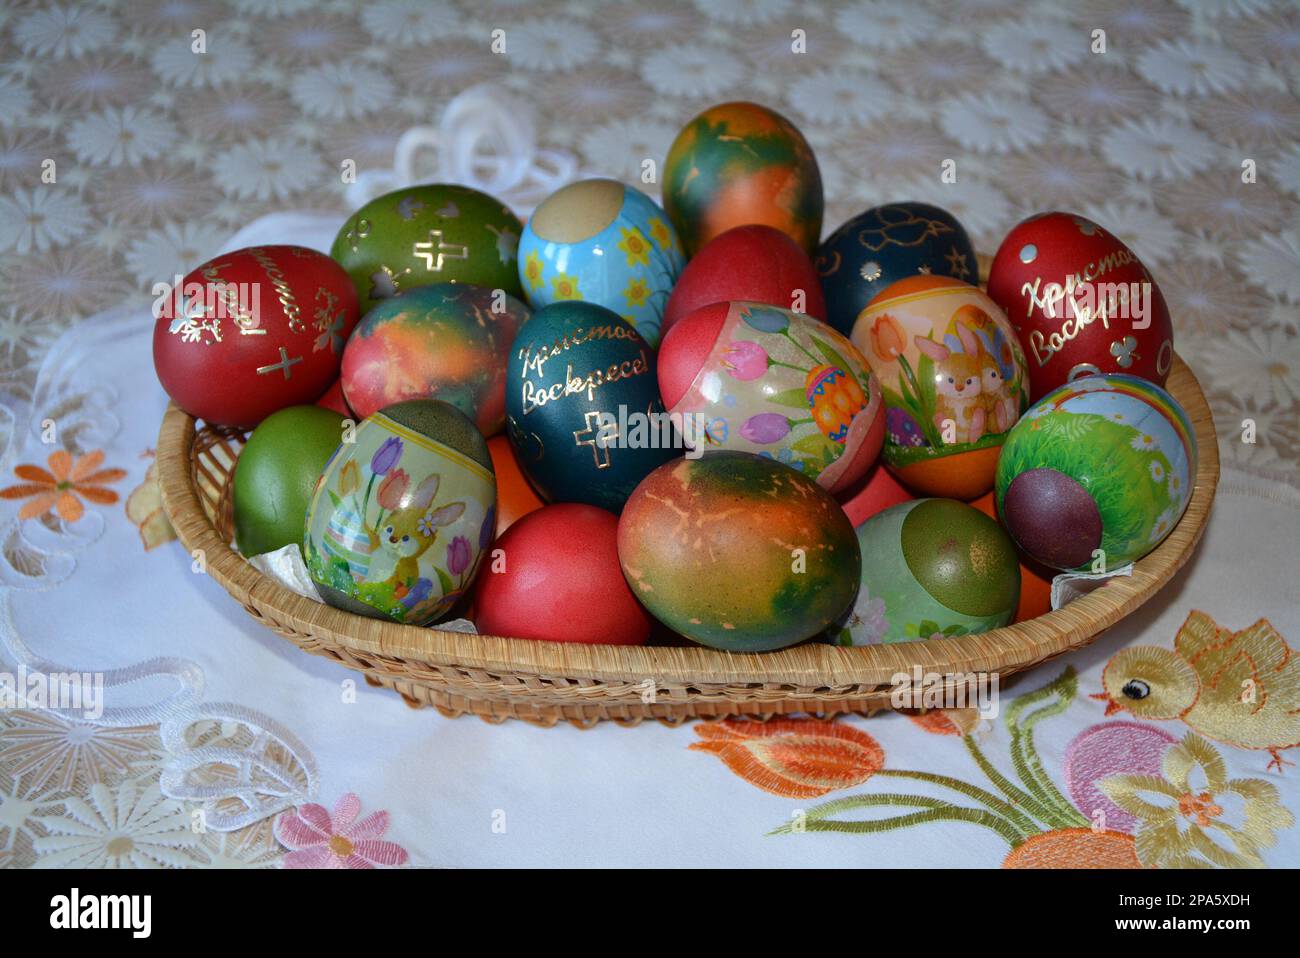 Primo piano di un cesto di tessitura con uova colorate multicolore per la tradizionale celebrazione pasquale in Bulgaria in aprile. Immagine orizzontale, messa a fuoco selettiva Foto Stock